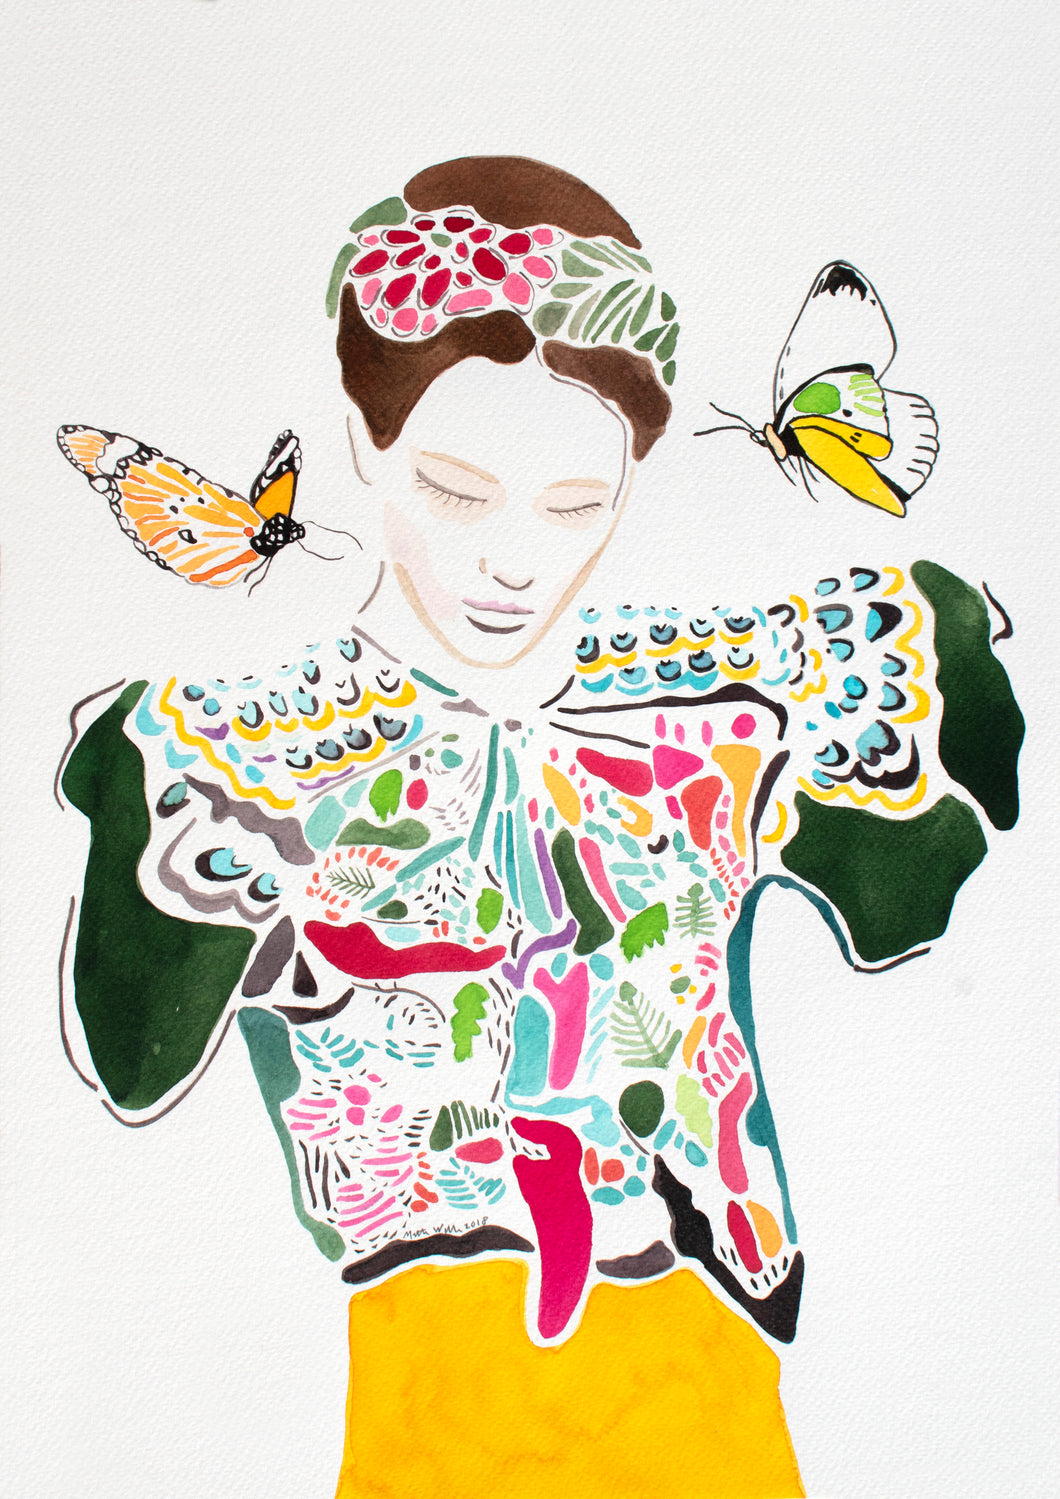 The Butterfly - Signeret kunsttryk af Mette Wille (A4)